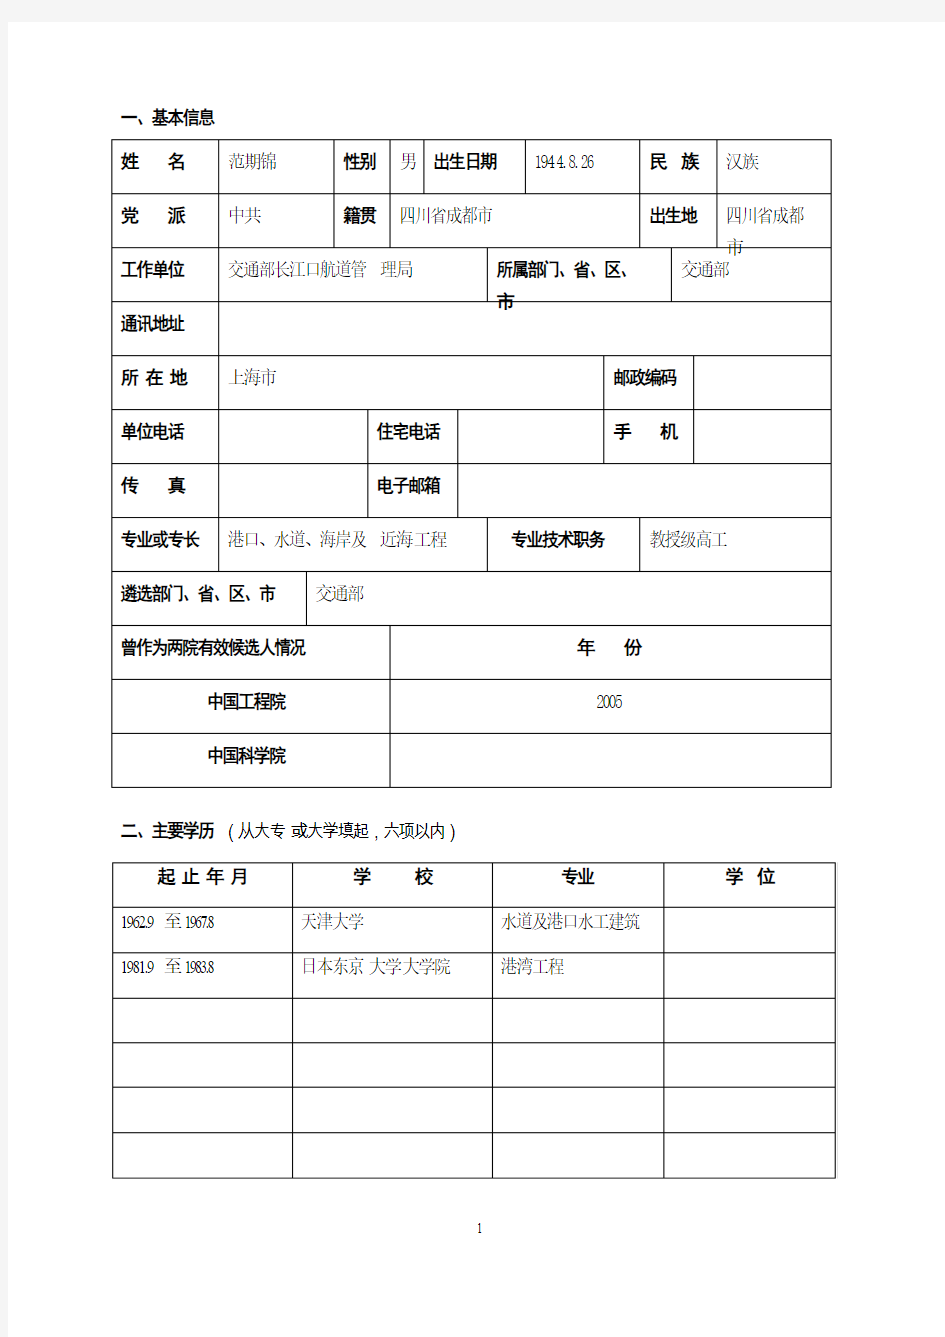 一、基本信息姓名范期锦性别男出生日期1944.8.26民族汉族党派